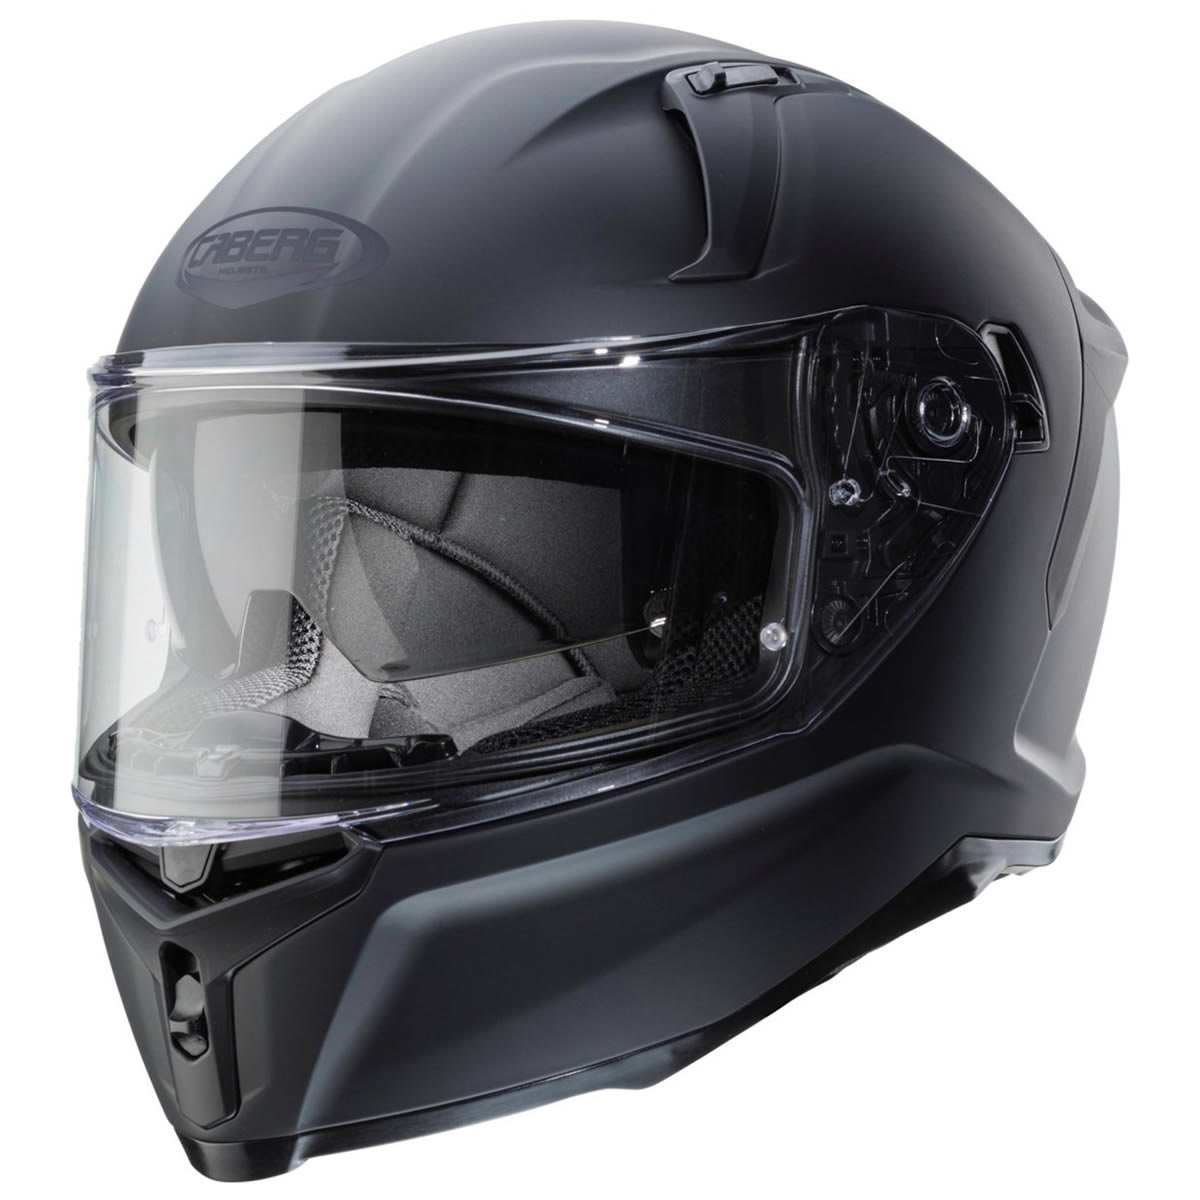 Caberg Avalon X Solid Helm, schwarz matt